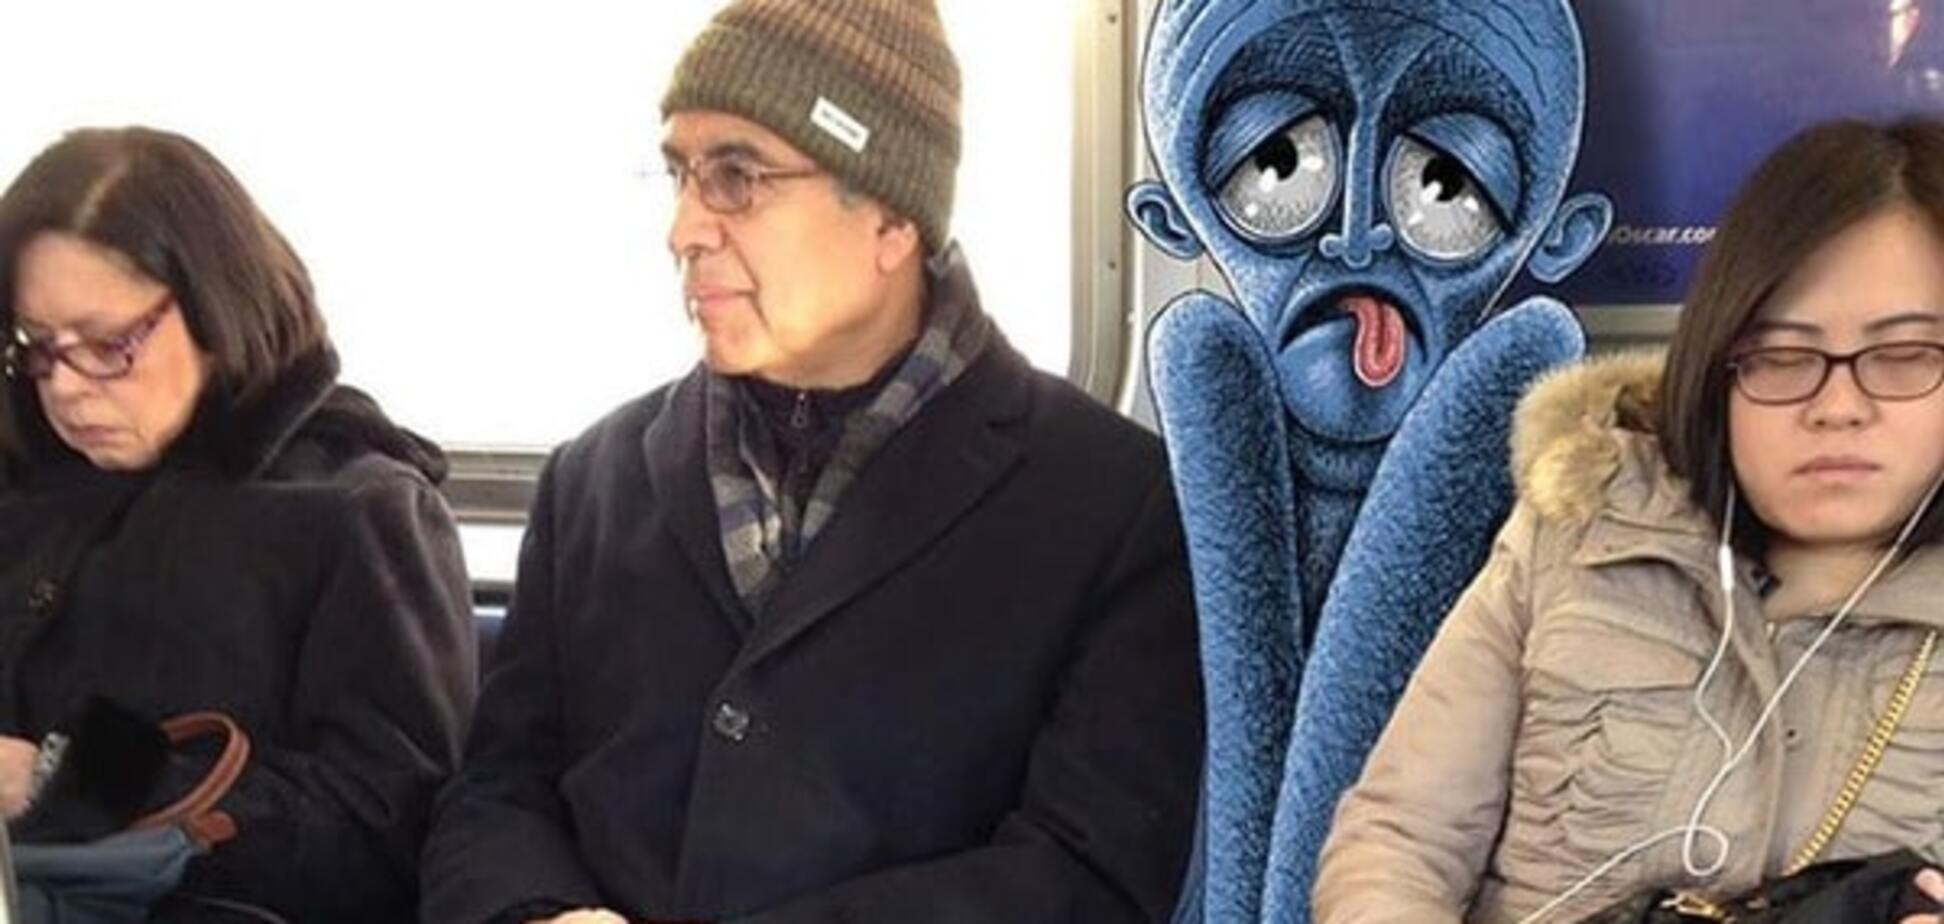 Узнай себя: художник из Нью-Йорка показал забавных монстров в метро